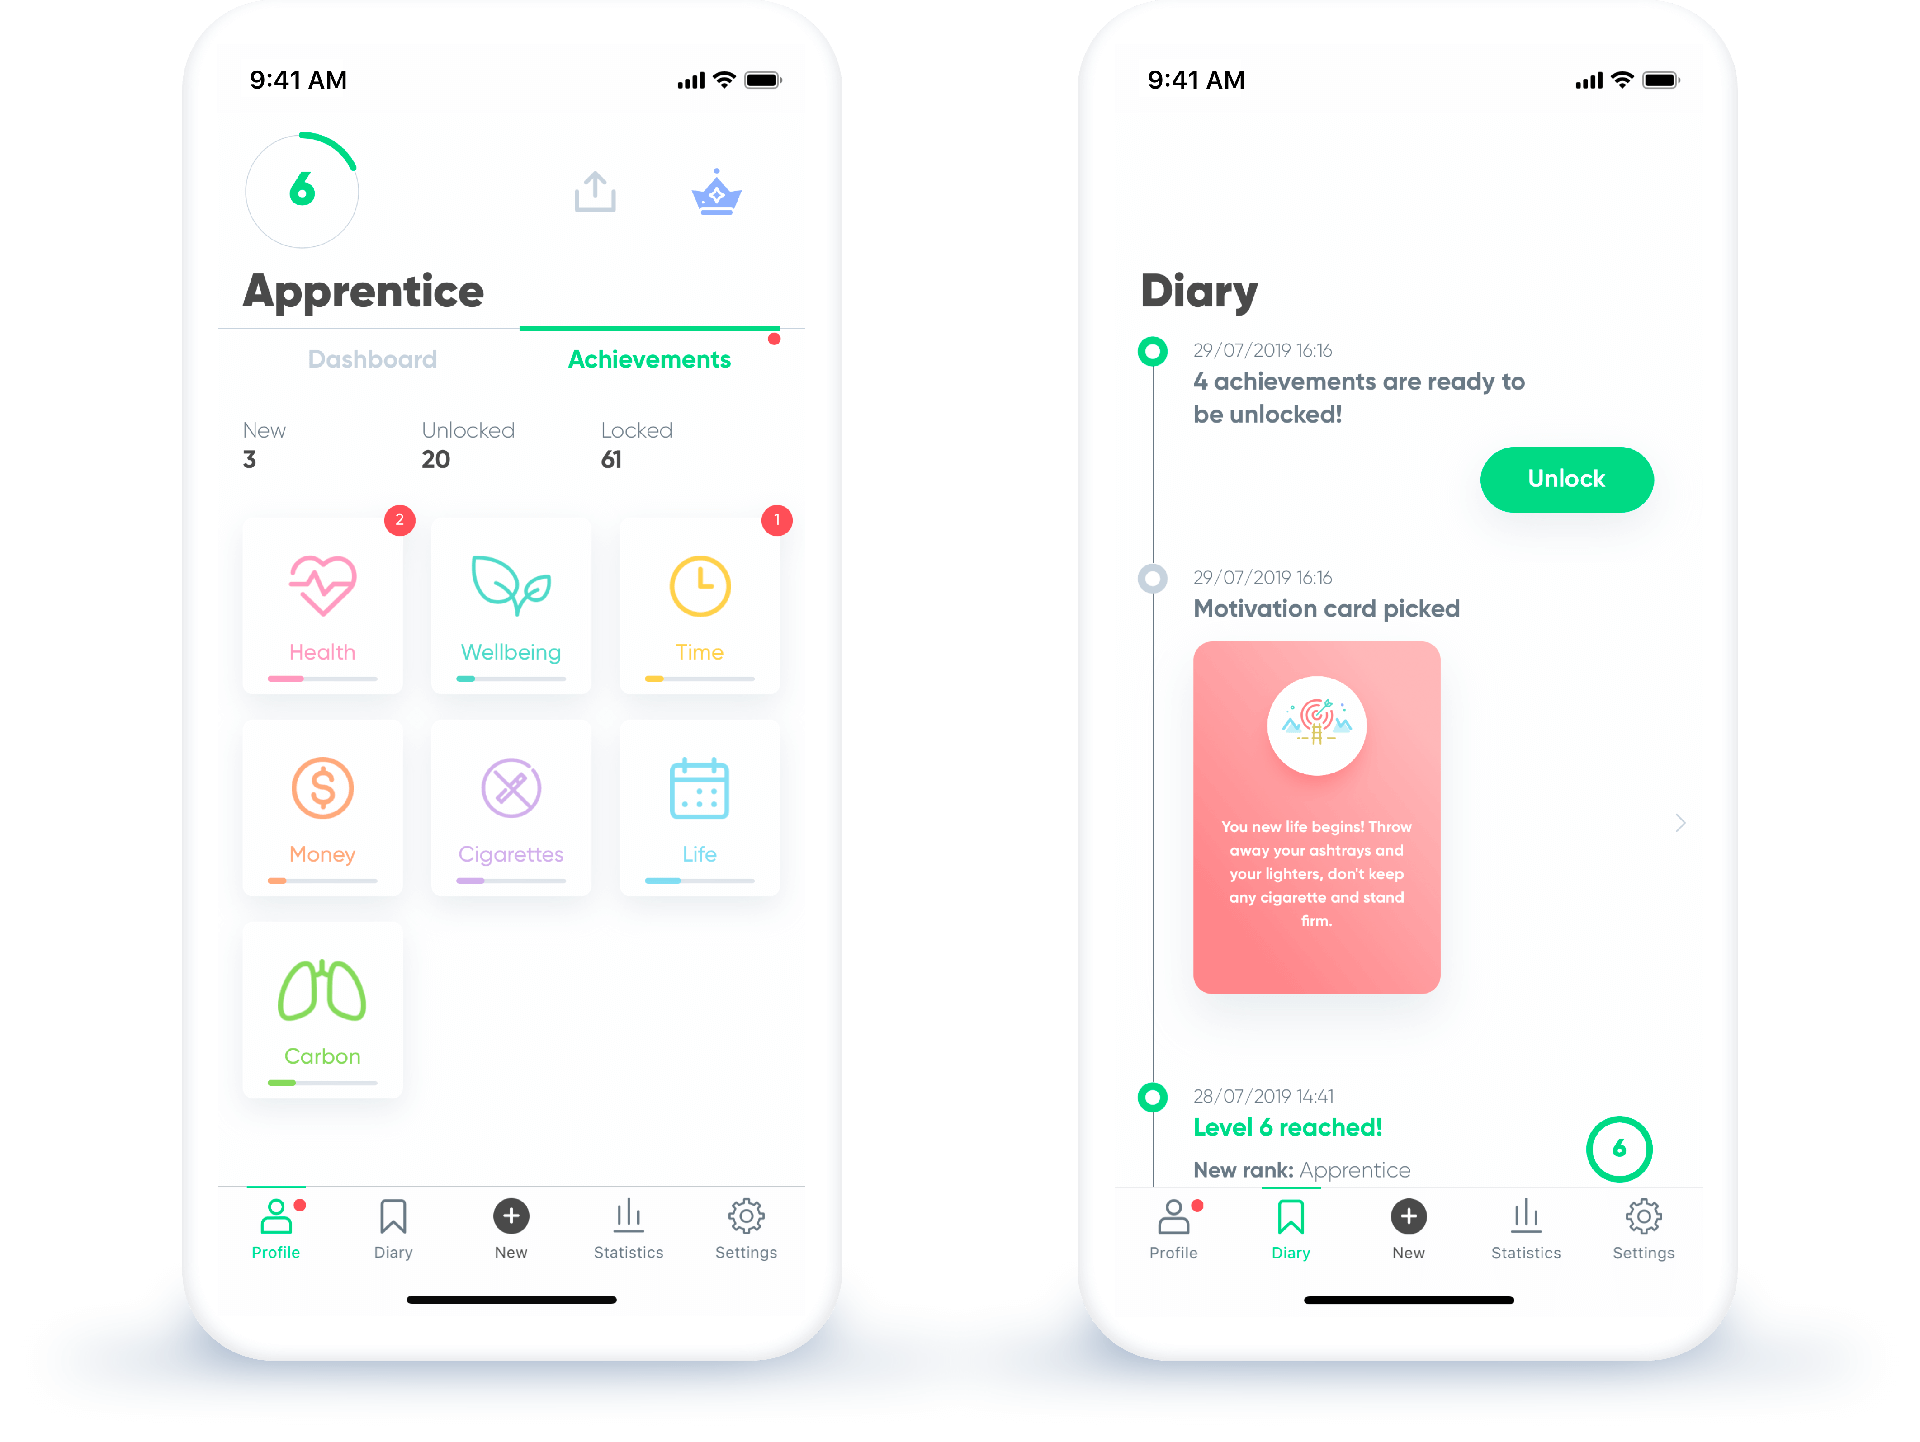 android app hogyan lehet leszokni a dohányzásról leszokni a dohányzásról szóló kinyilatkoztatásokról